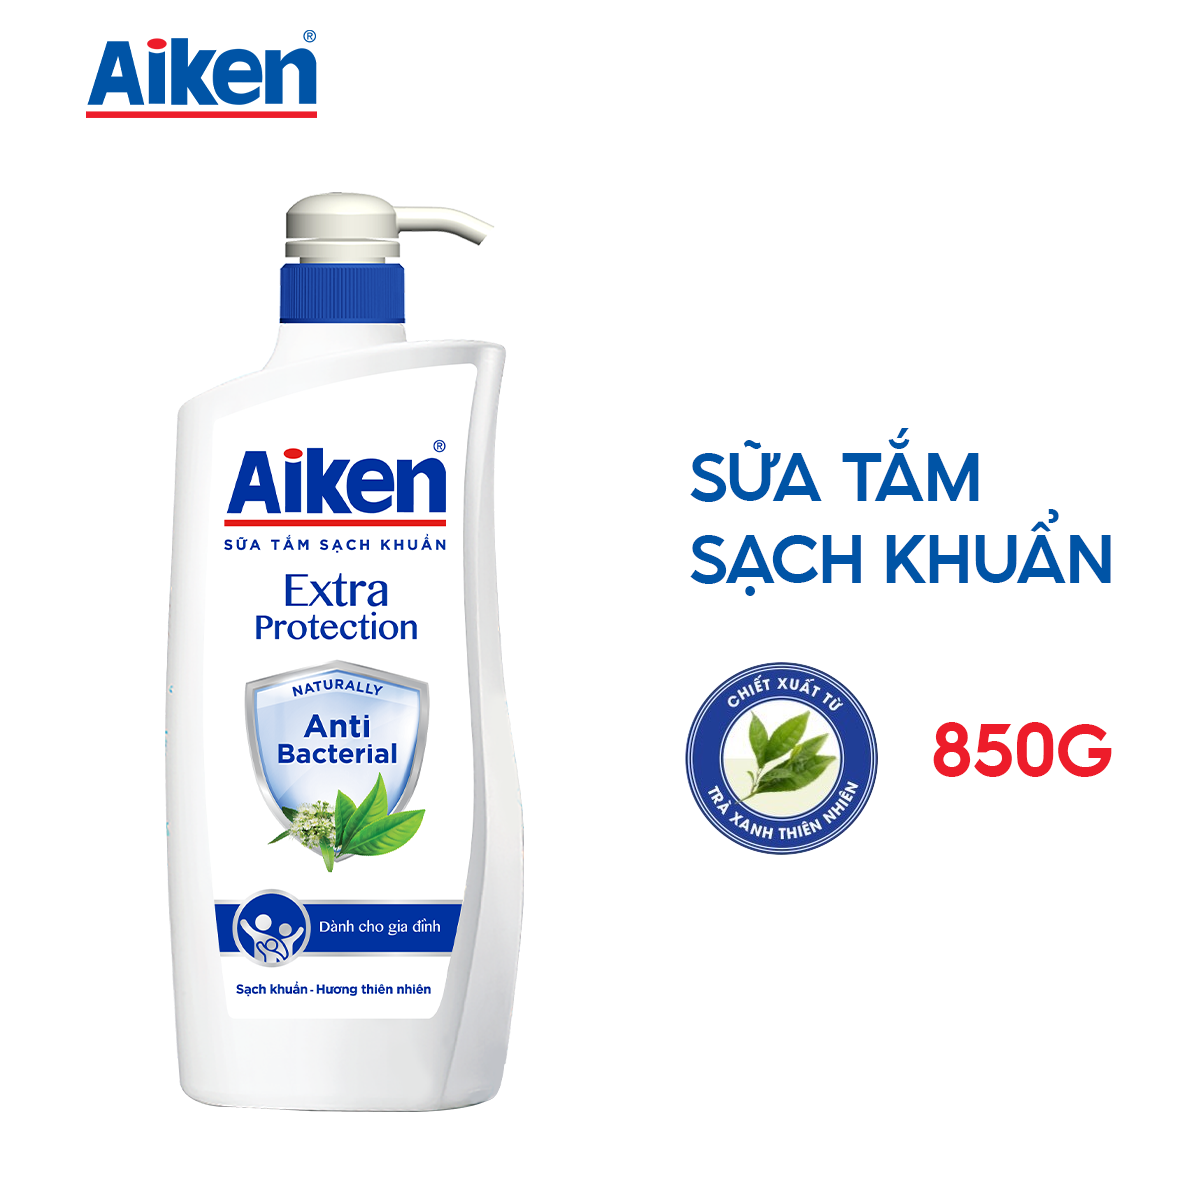 Aiken Sữa tắm Trà Xanh 850g + Nước rửa tay 250g